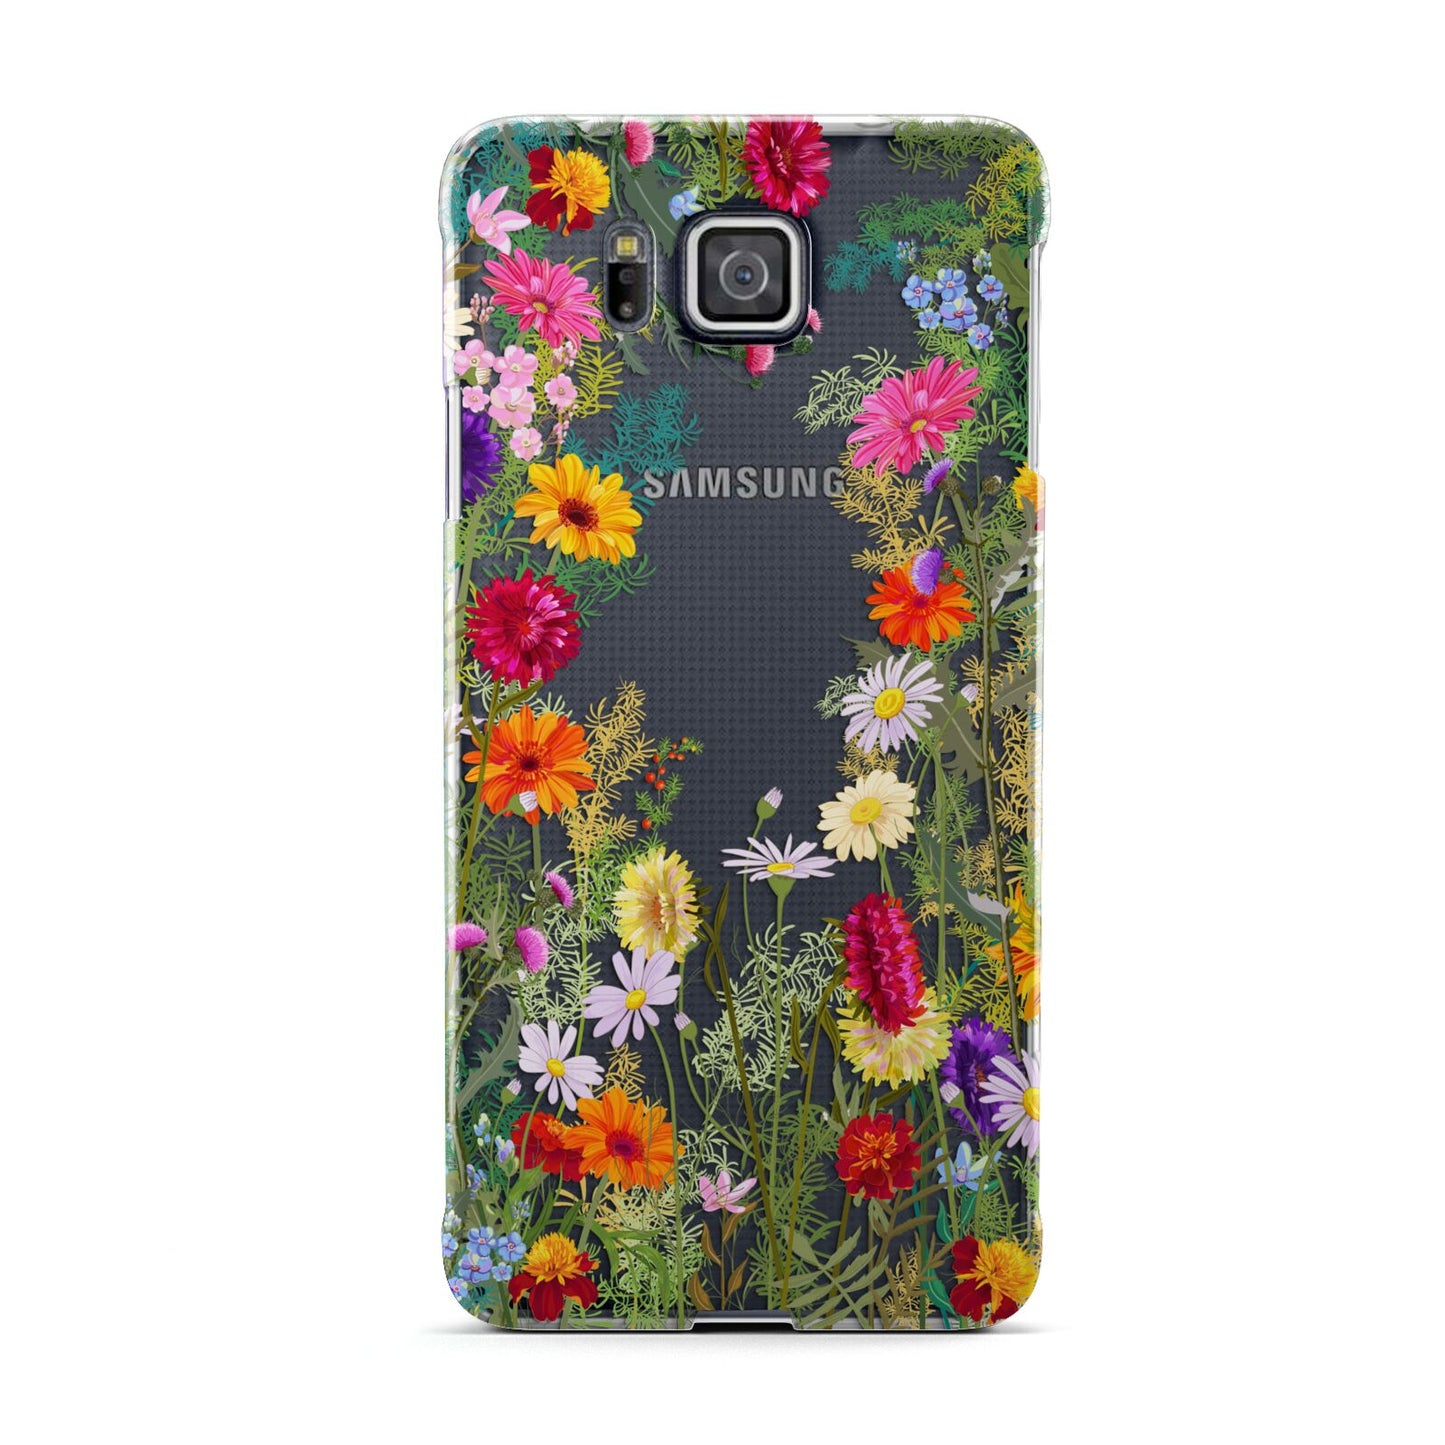 Wildflower Samsung Galaxy Alpha Case